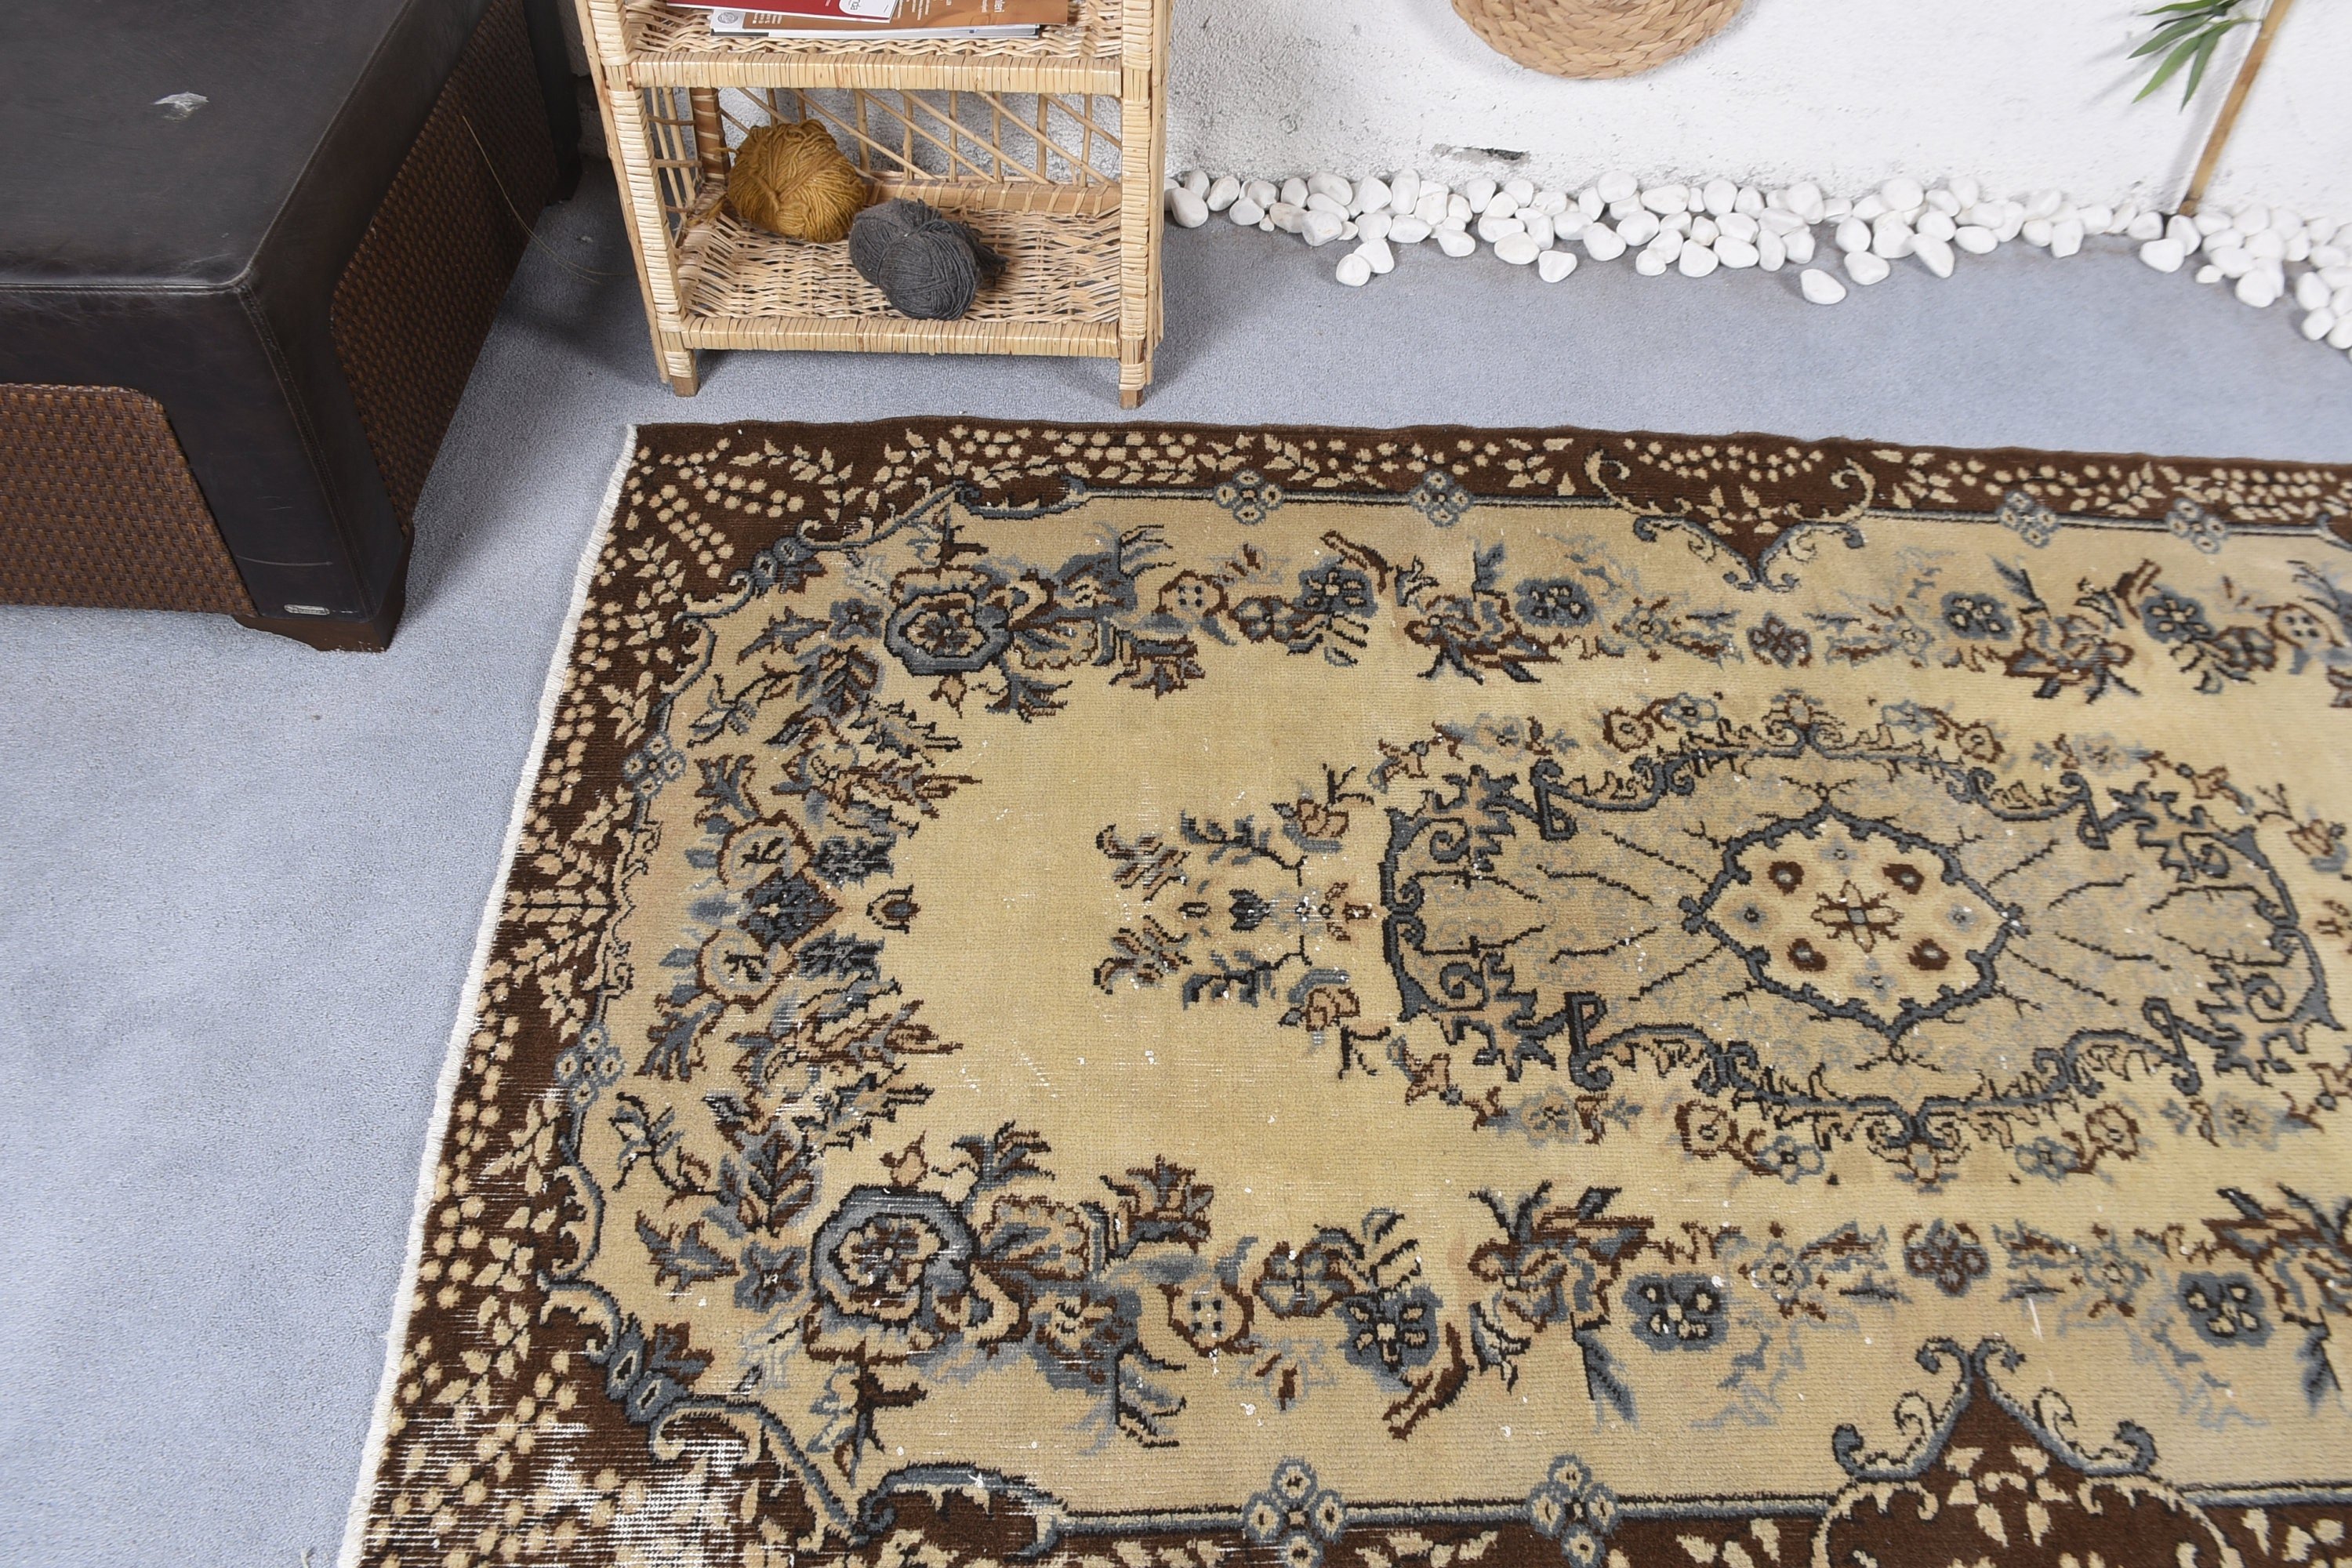 Wedding Rug, Turkish Rugs, Dining Room Rugs, Vintage Rug, Beige Bedroom Rug, Moroccan Rug, 4x7.2 ft Area Rug, Wool Rugs, Rugs for Bedroom